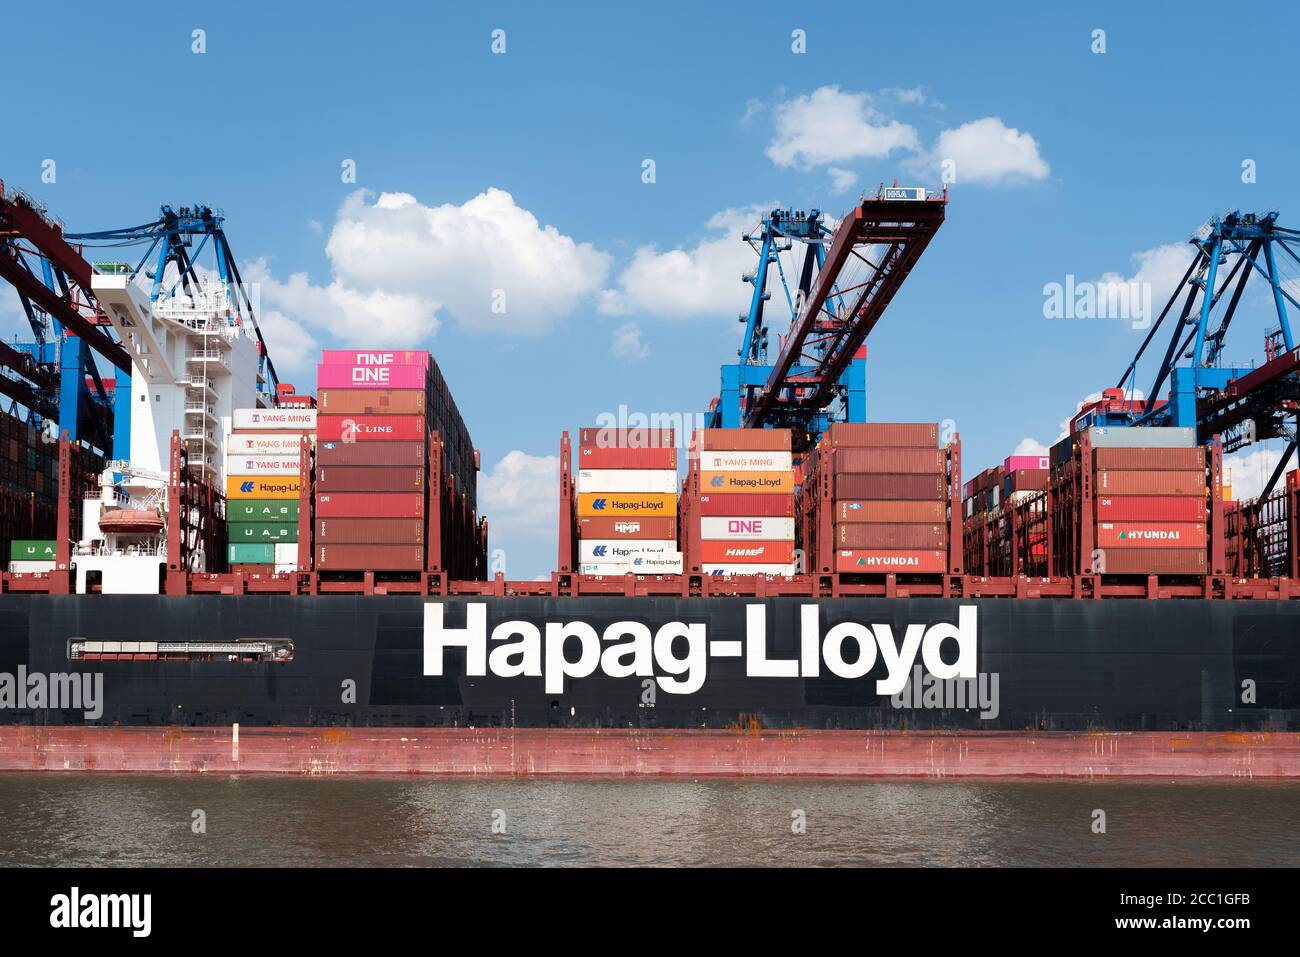 08-16-2020 Hambourg, Allemagne: Gros navire à conteneurs et grues portiques à conteneurs dans le port de Hambourg. AL DAHNA est un navire de 400 mètres de long qui a été opérée par Banque D'Images